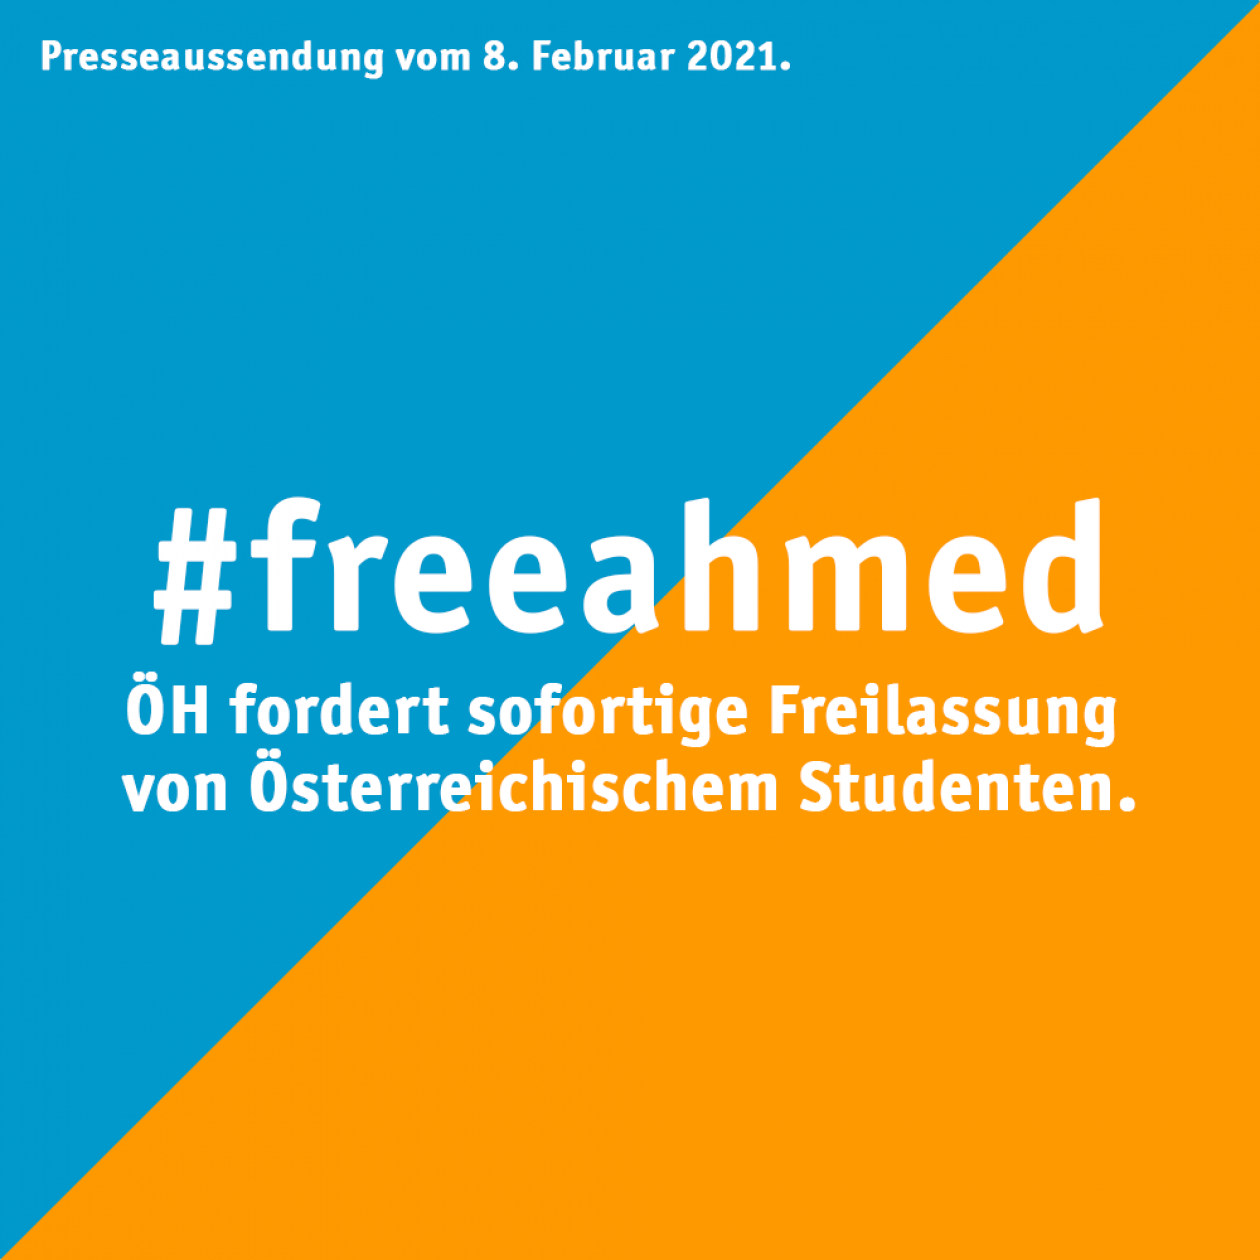 ÖH fordert sofortige Freilassung von österreichischem Studierenden Ahmed Samir Abdelhay Ali